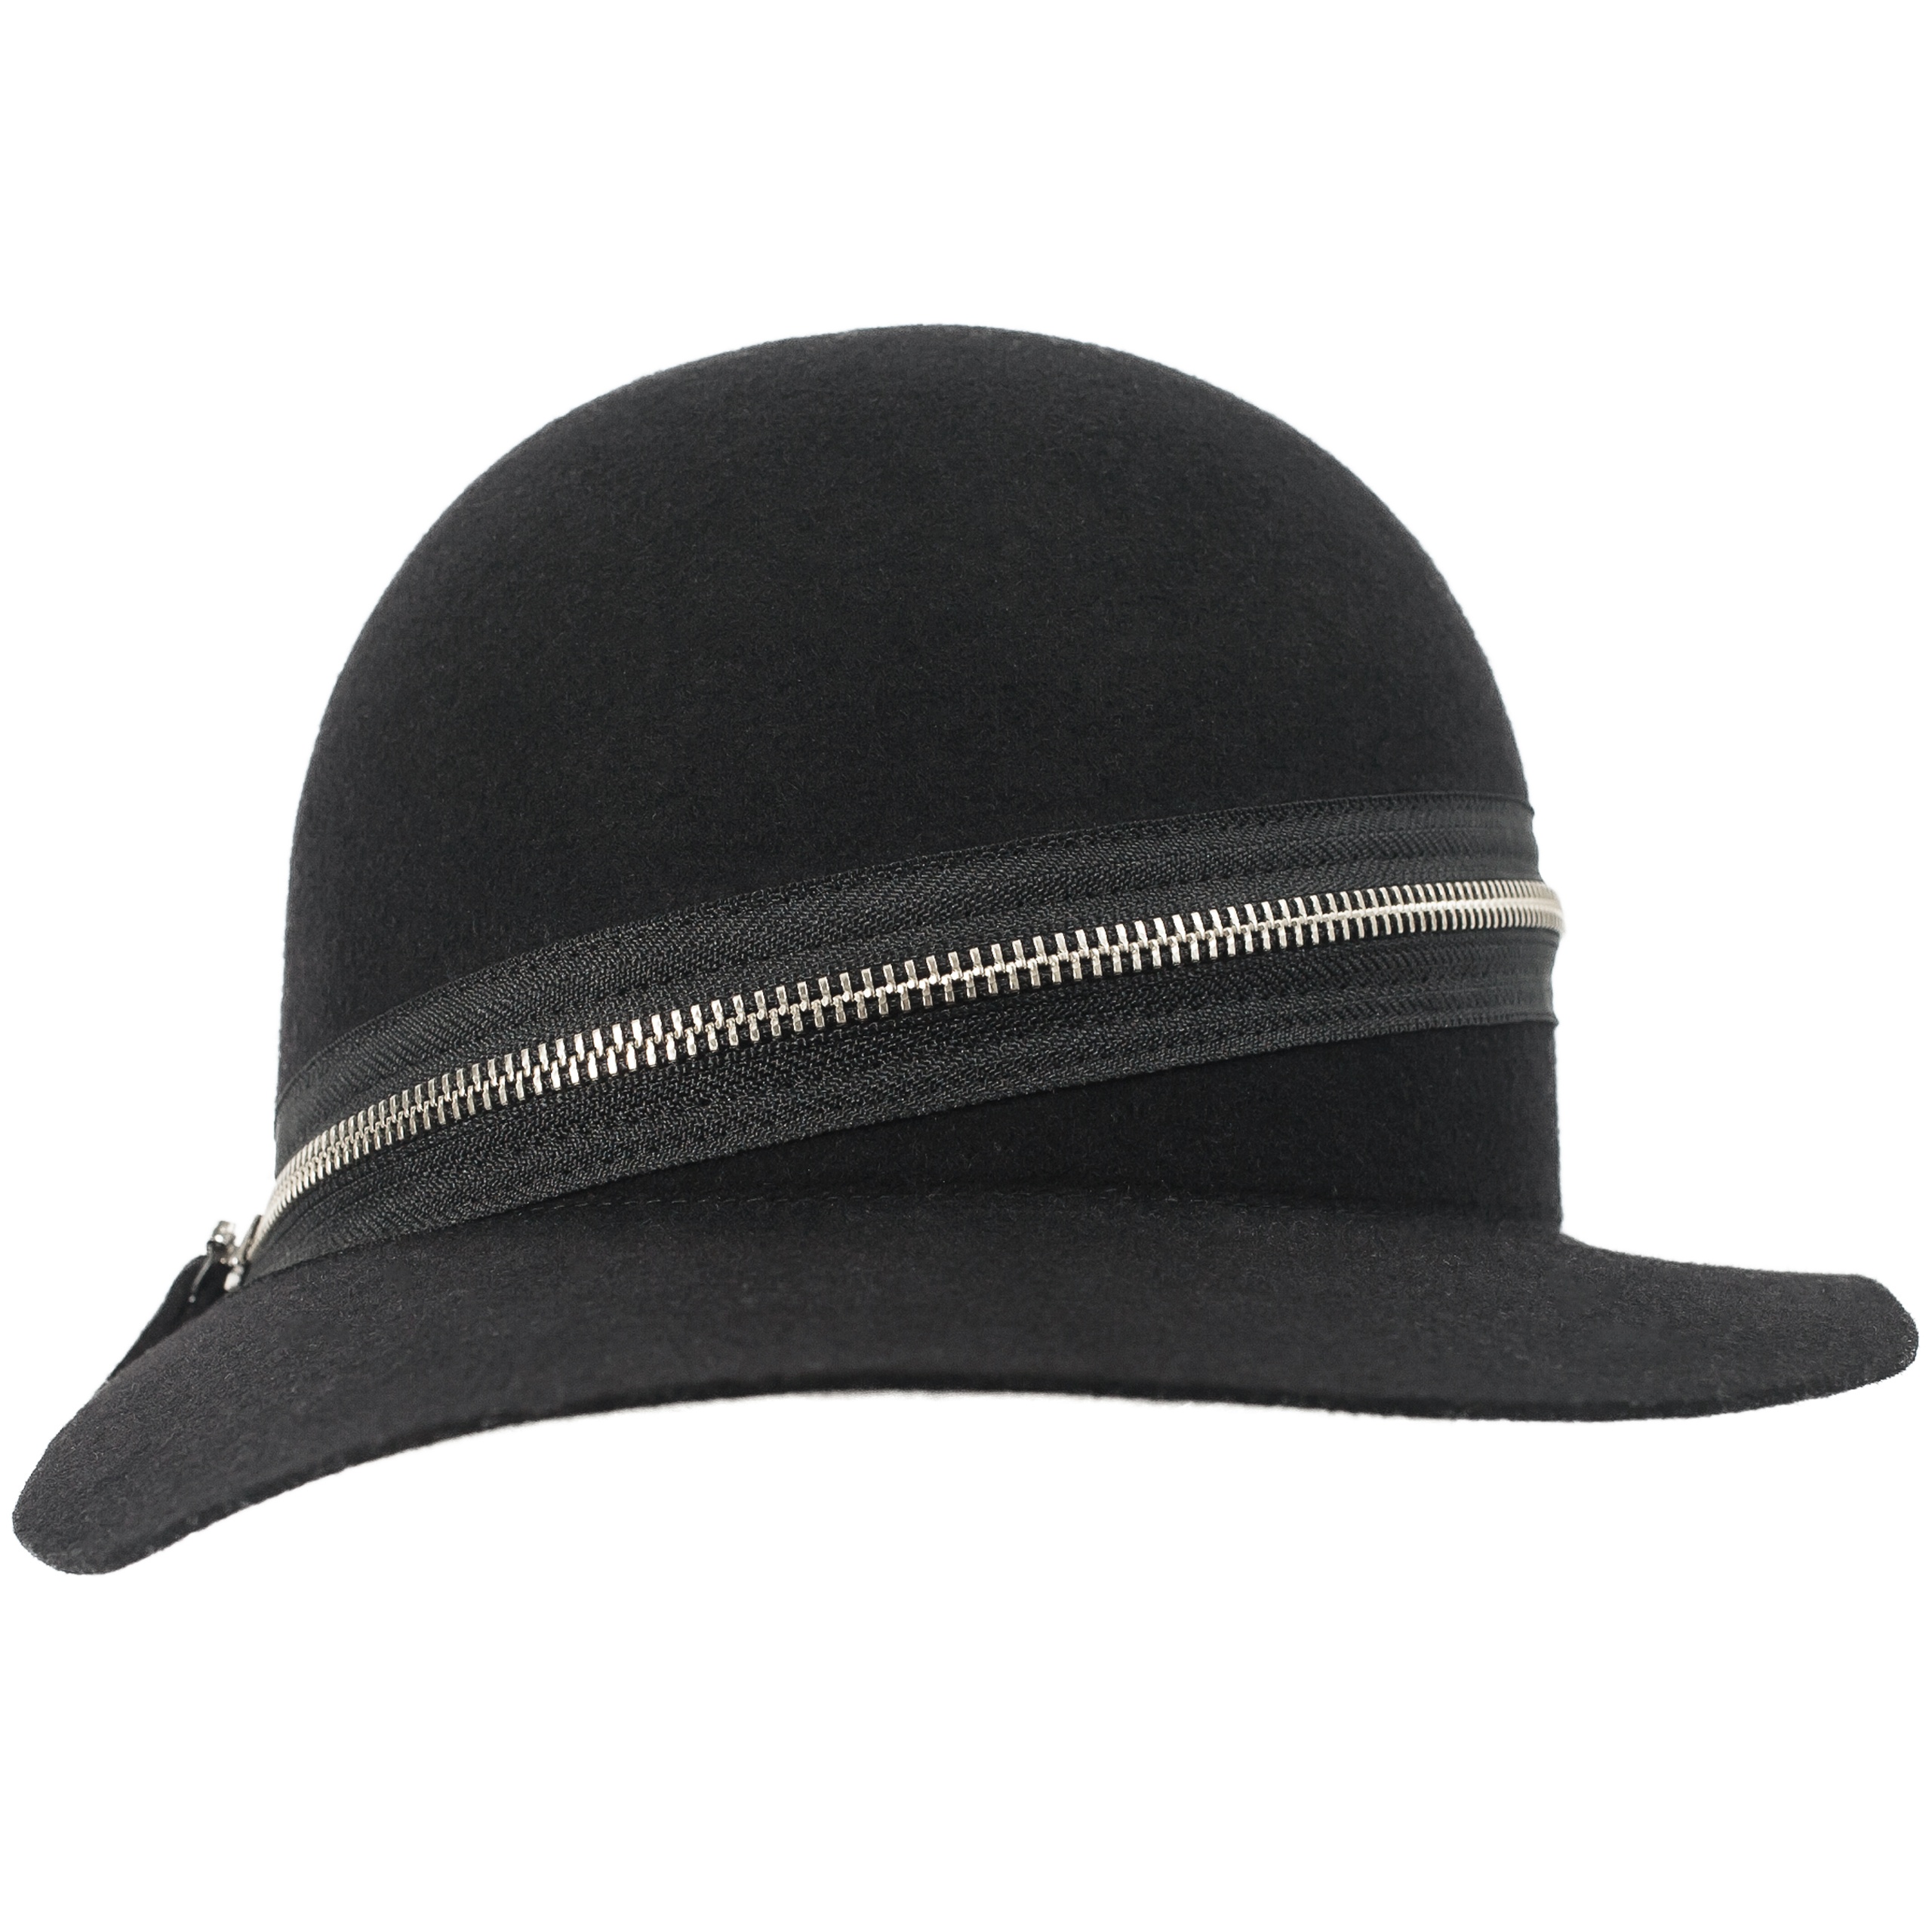 BLACK WOOL CAP - 1